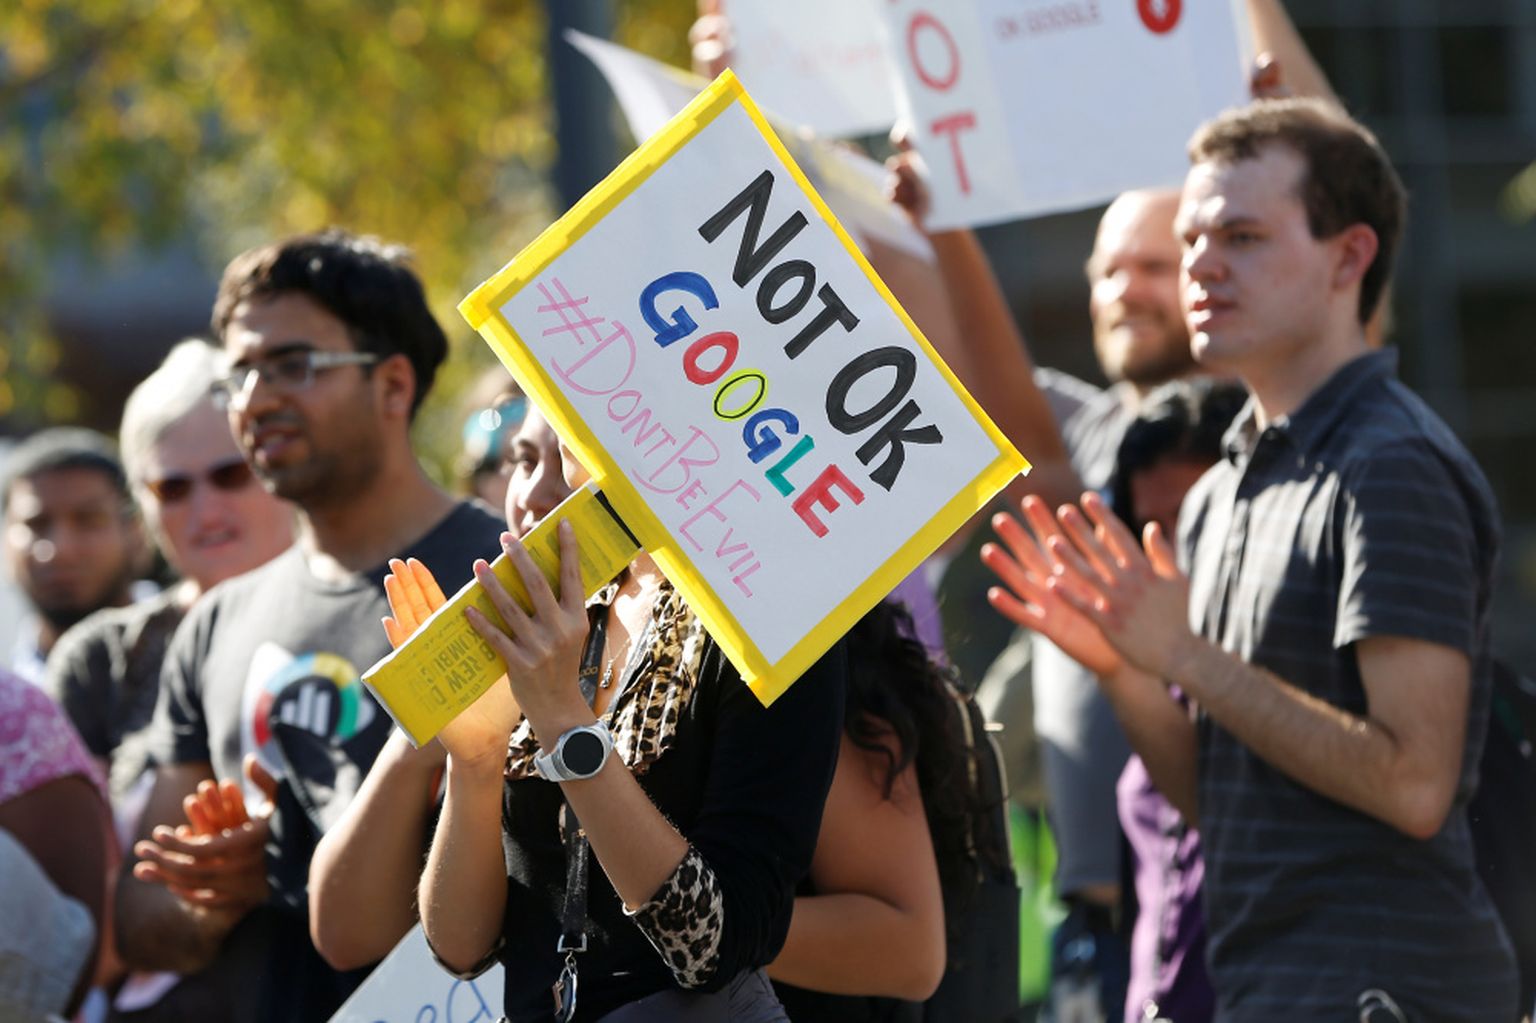 Google darbinieku protests par kompānijas vadības izmaksāto atlaišanas pabalstu 90 miljonu vērtībā seksuālā uzmācībā apsūdzētajam Endijam Rubinam